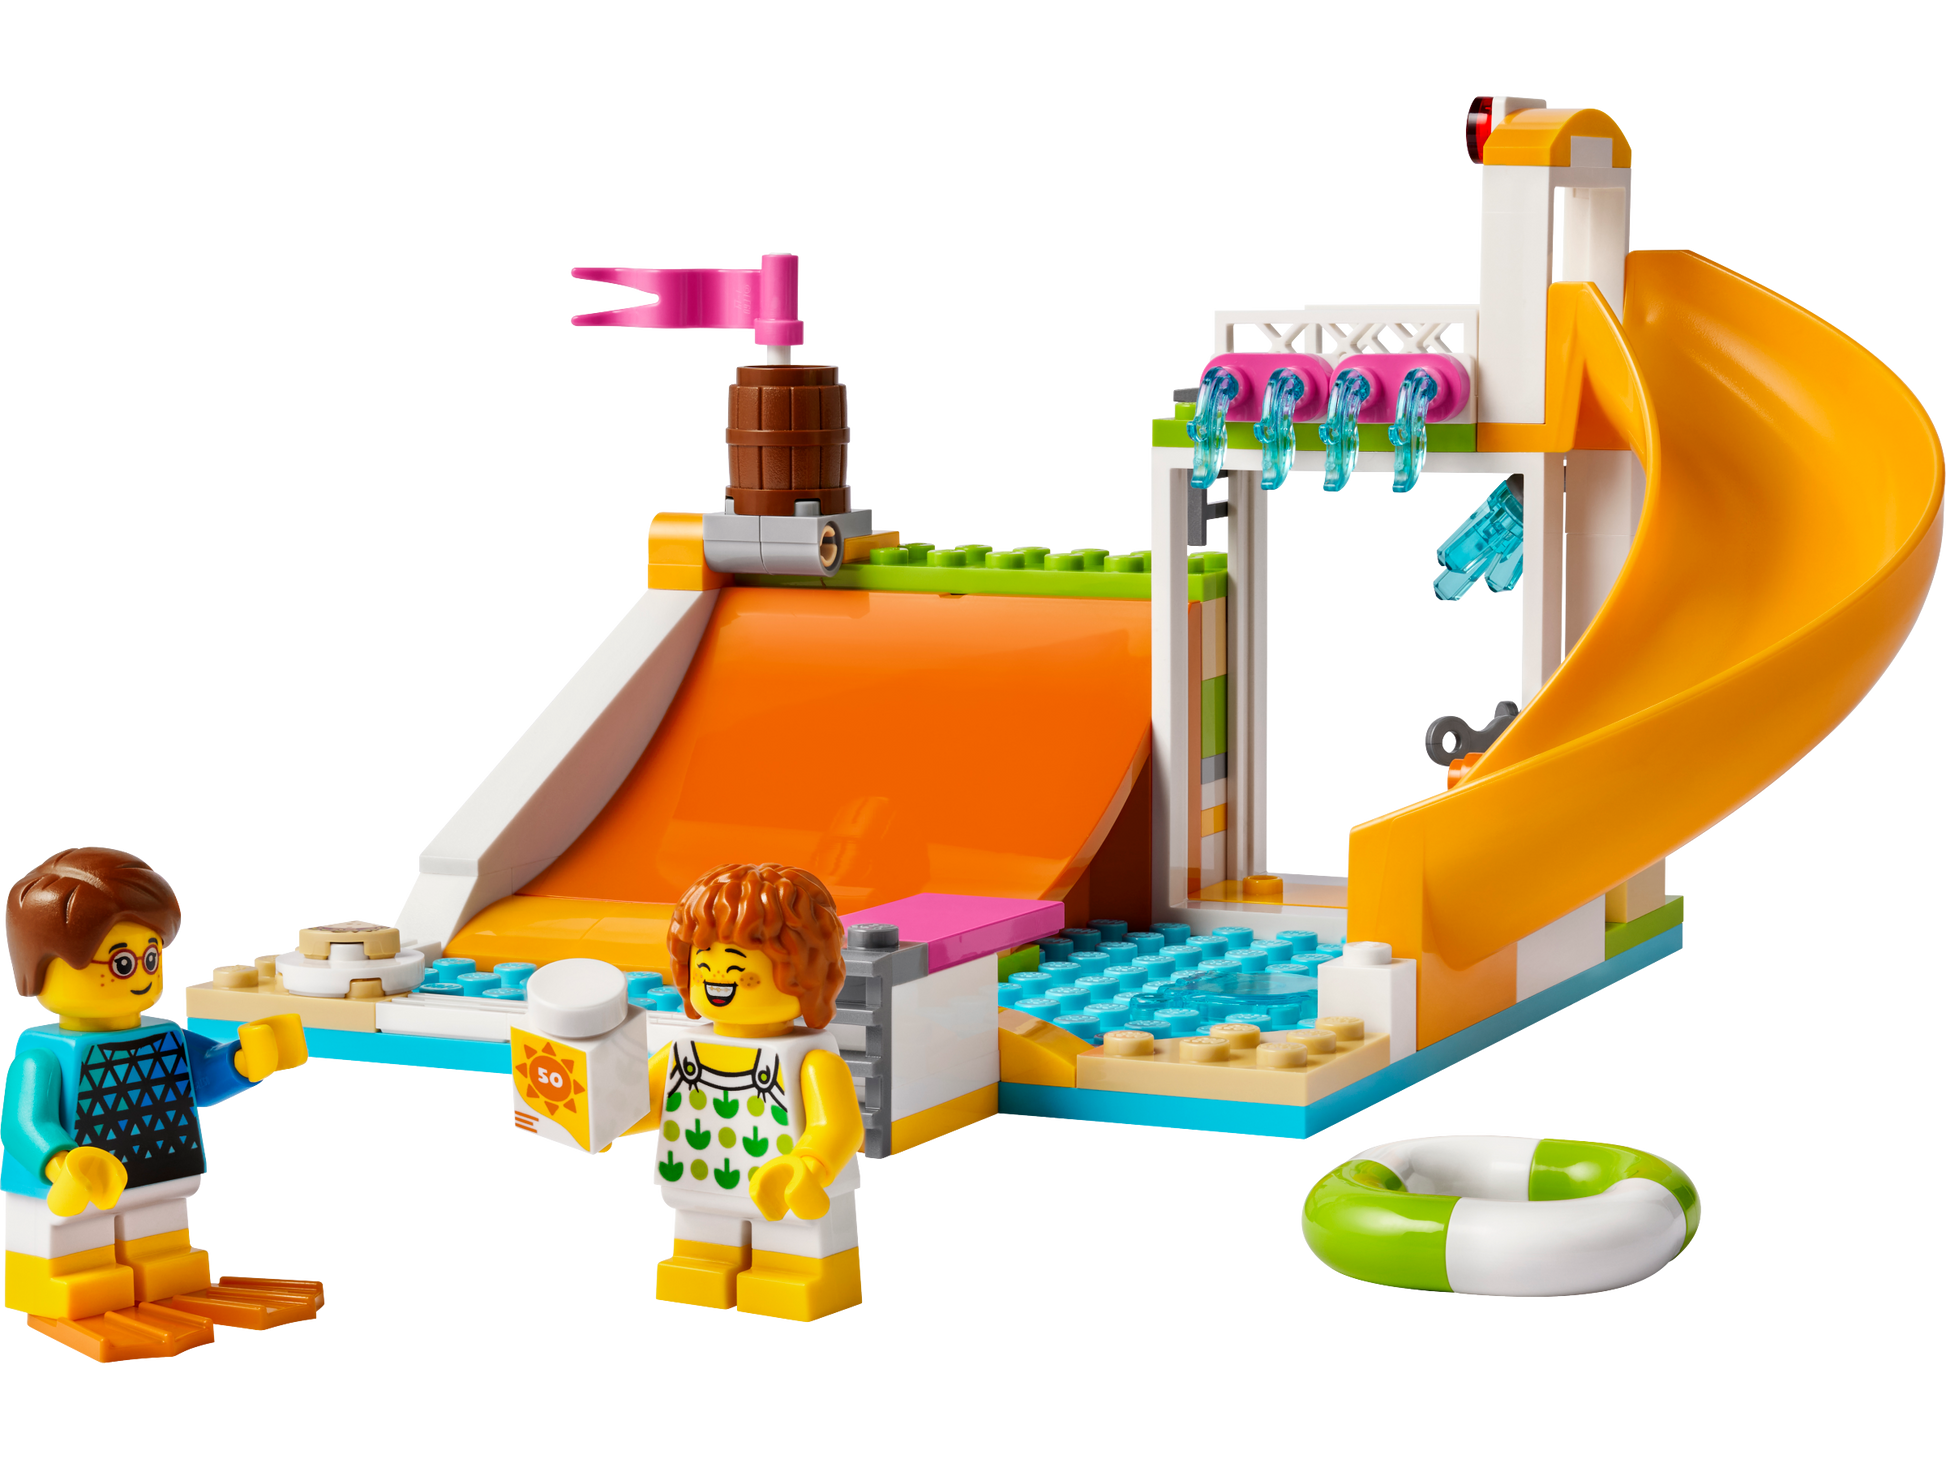 LEGO® set 40685